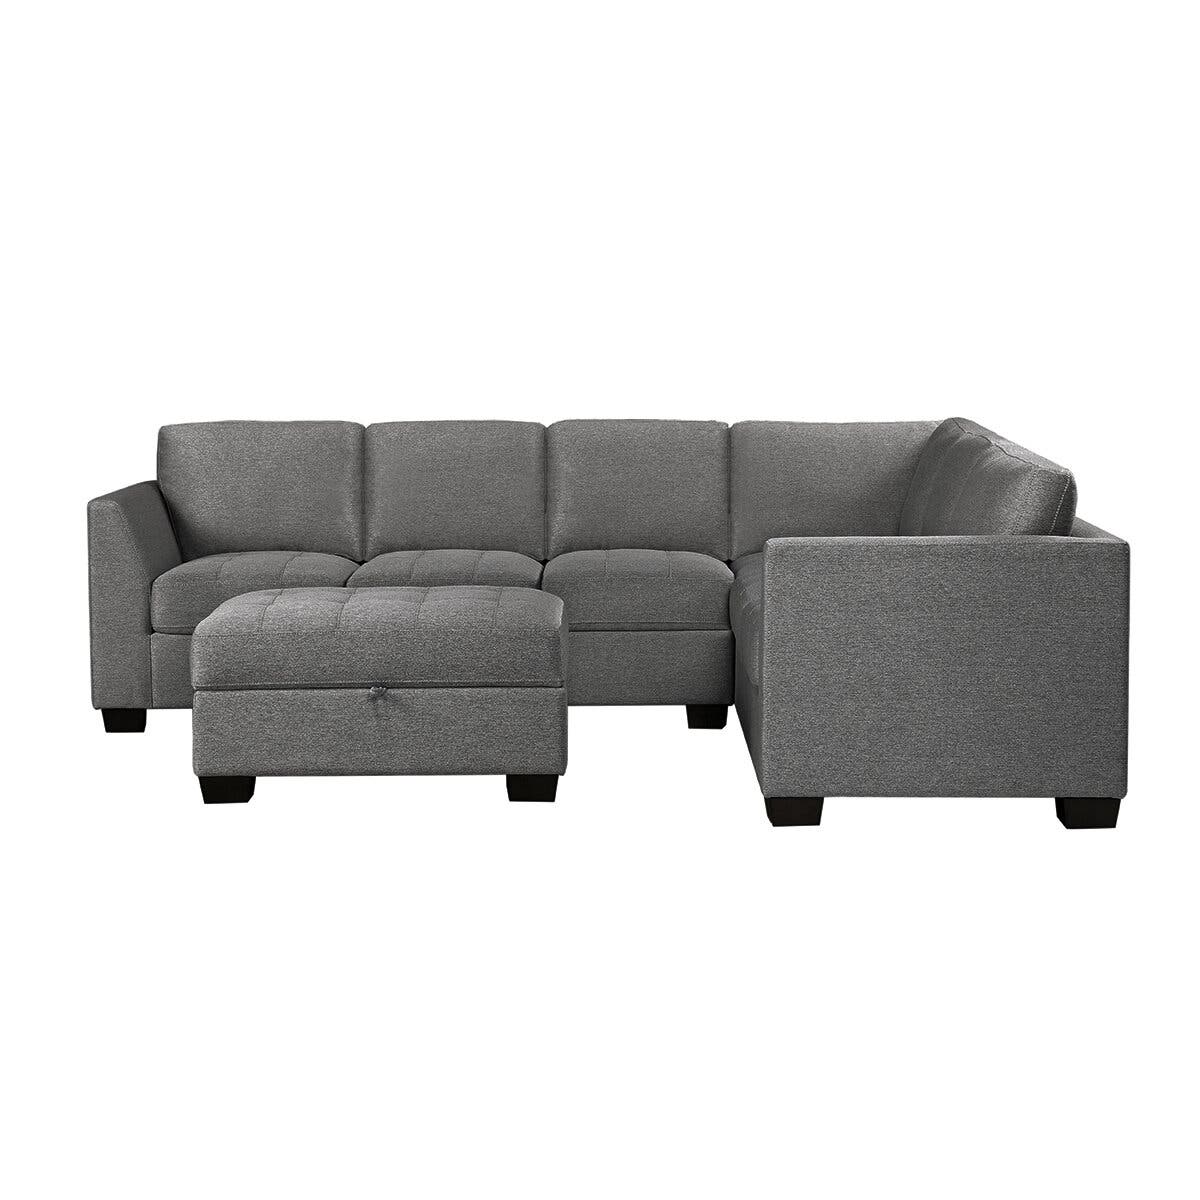 El sofá de Costco que gusta por su estilo y que tiene un precio increíble